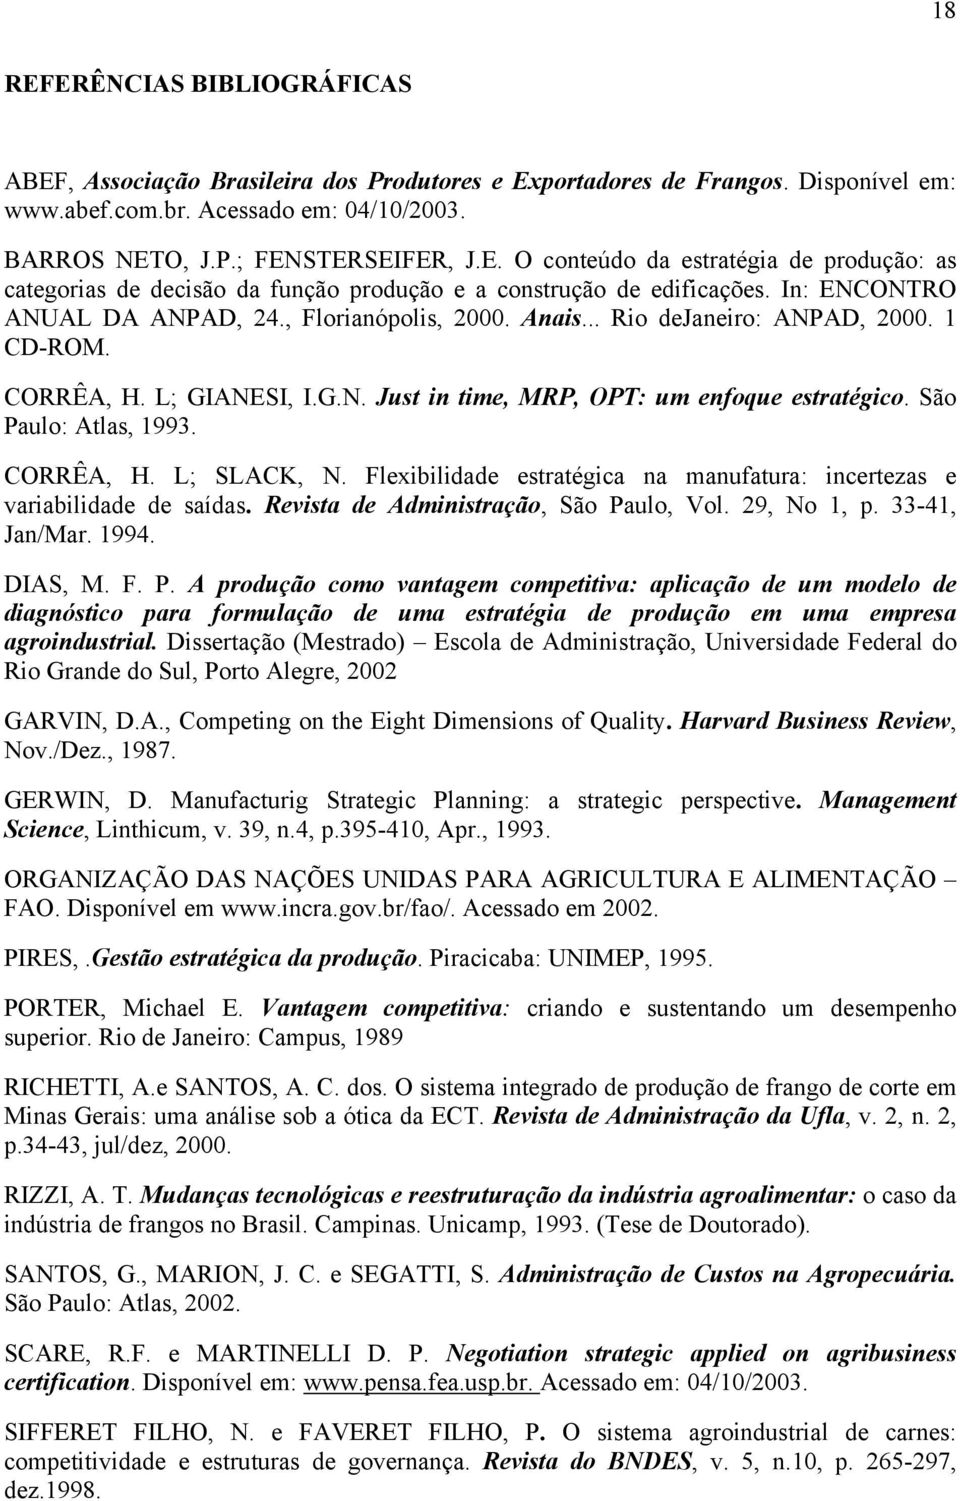 São Paulo: Atlas, 1993. CORRÊA, H. L; SLACK, N. Flexibilidade estratégica na manufatura: incertezas e variabilidade de saídas. Revista de Administração, São Paulo, Vol. 29, No 1, p. 33-41, Jan/Mar.